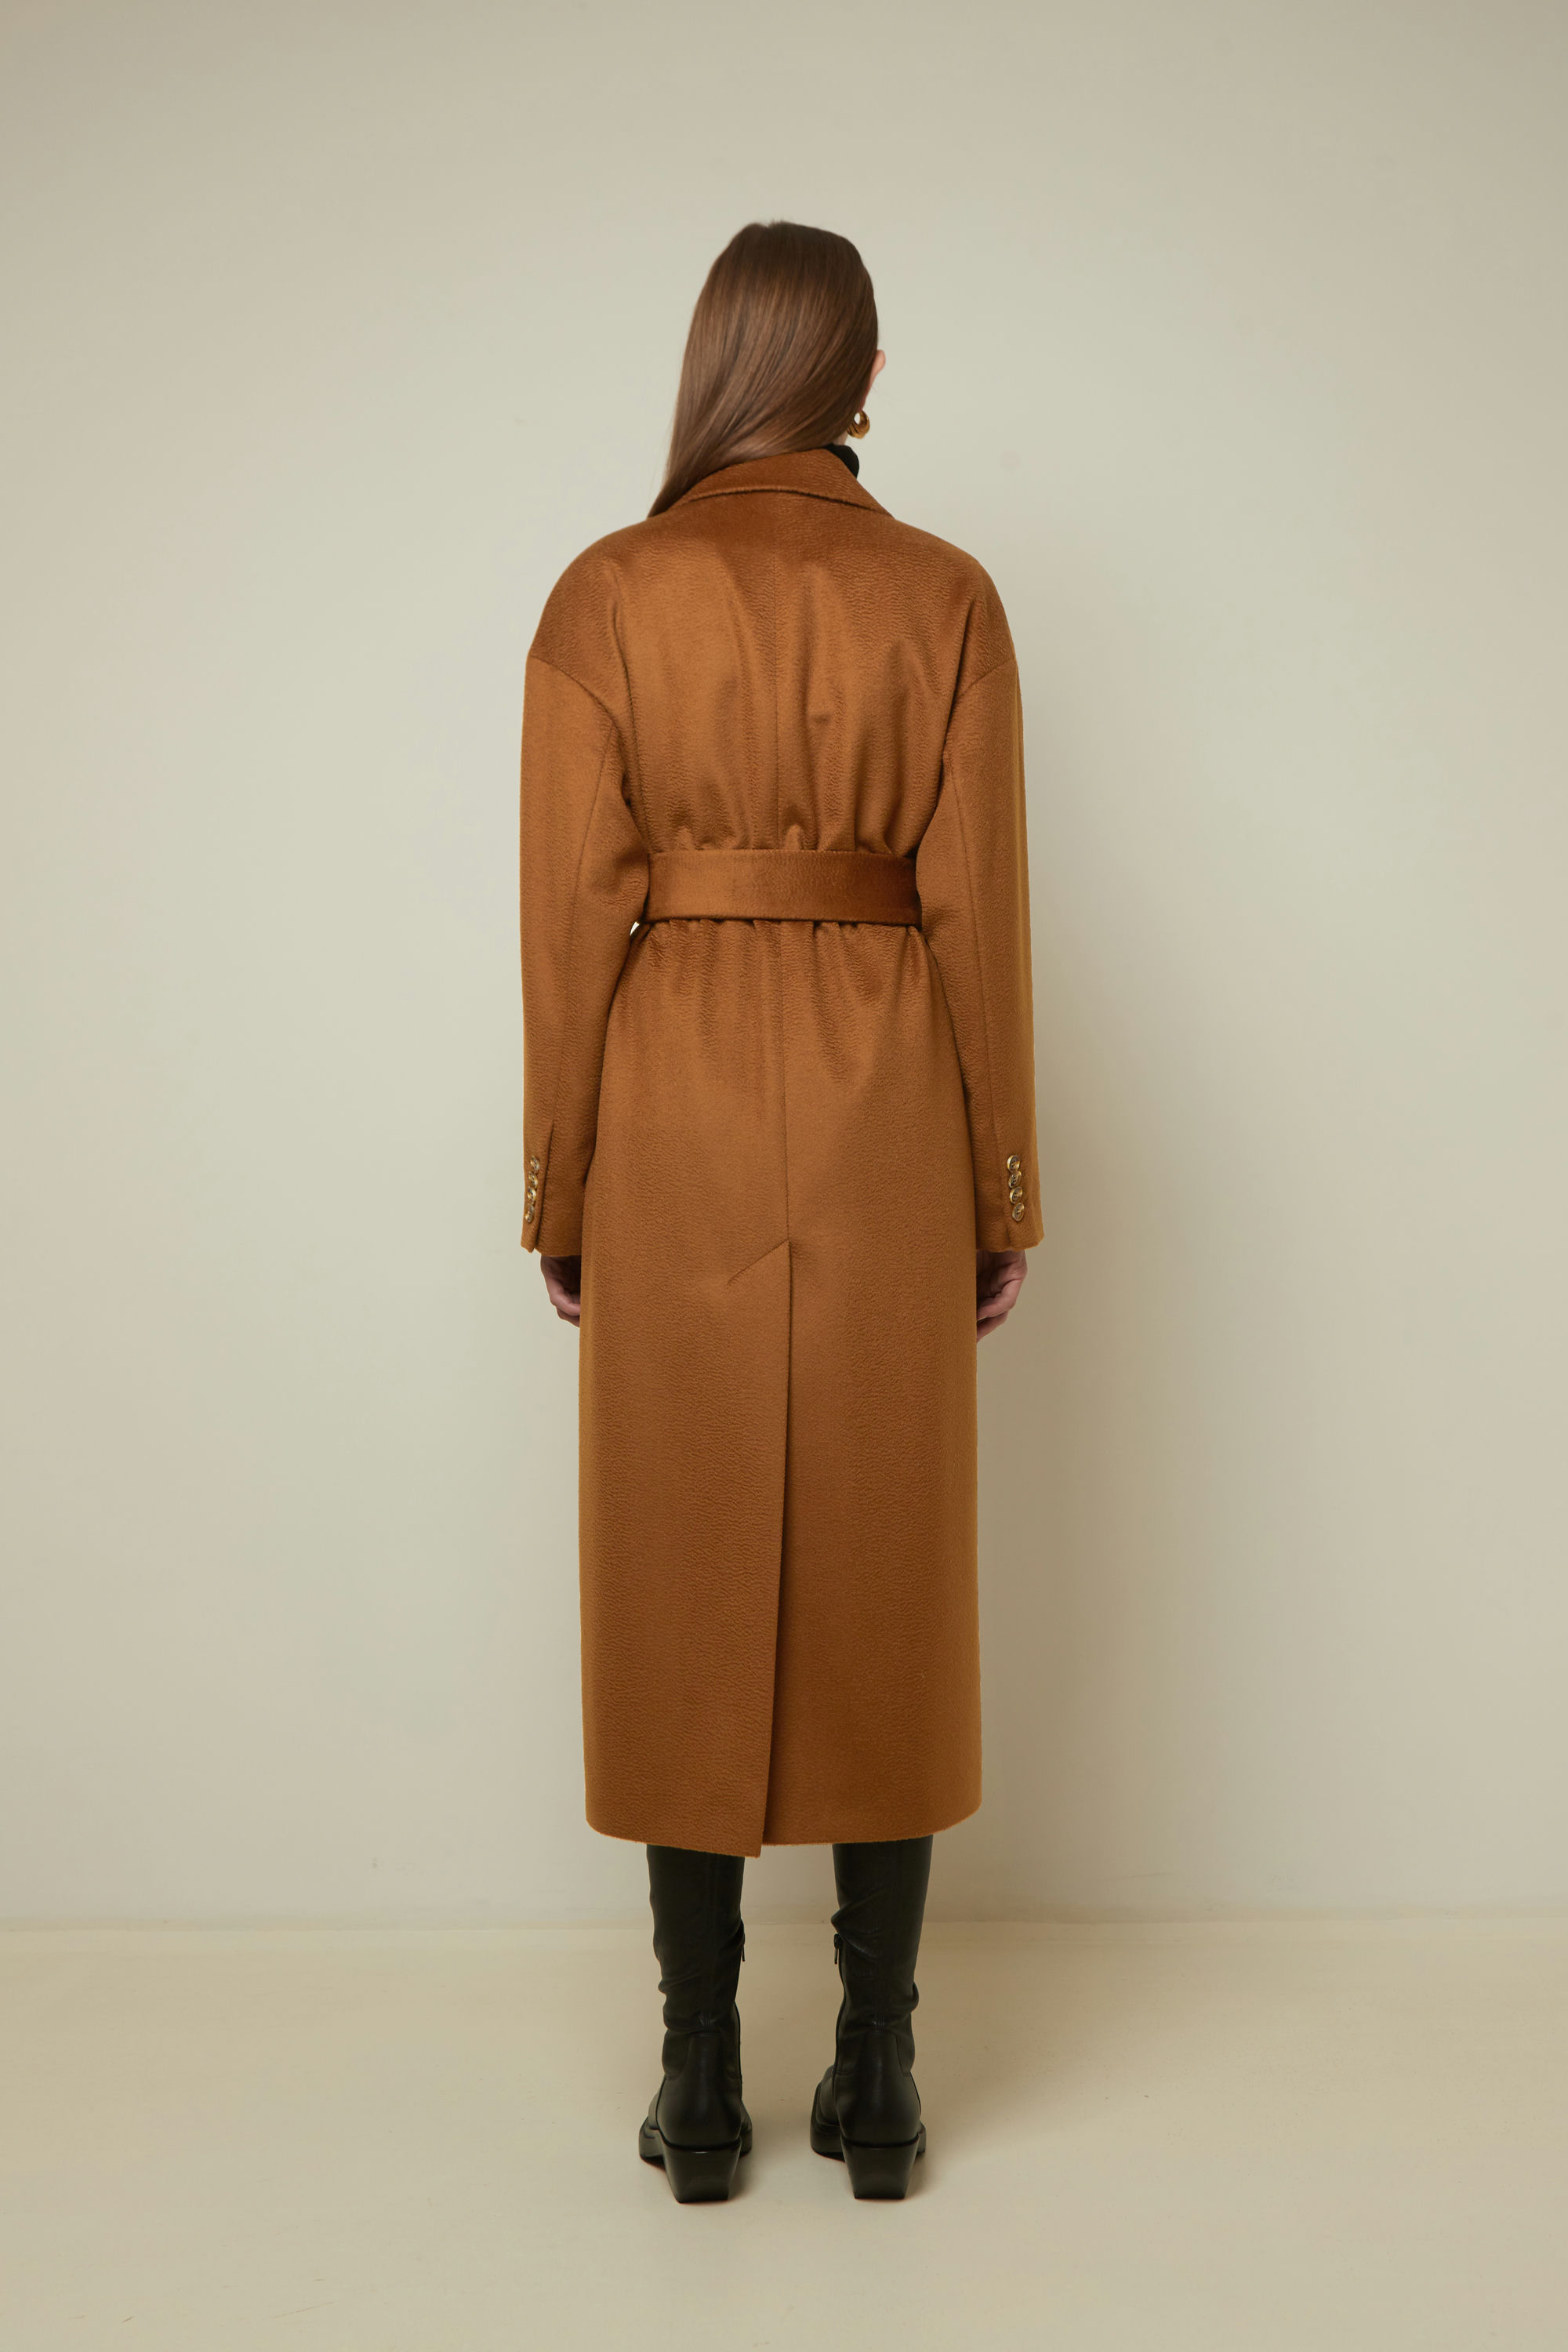 Пальто женское демисезонное 1-13140-1. Фото 3.